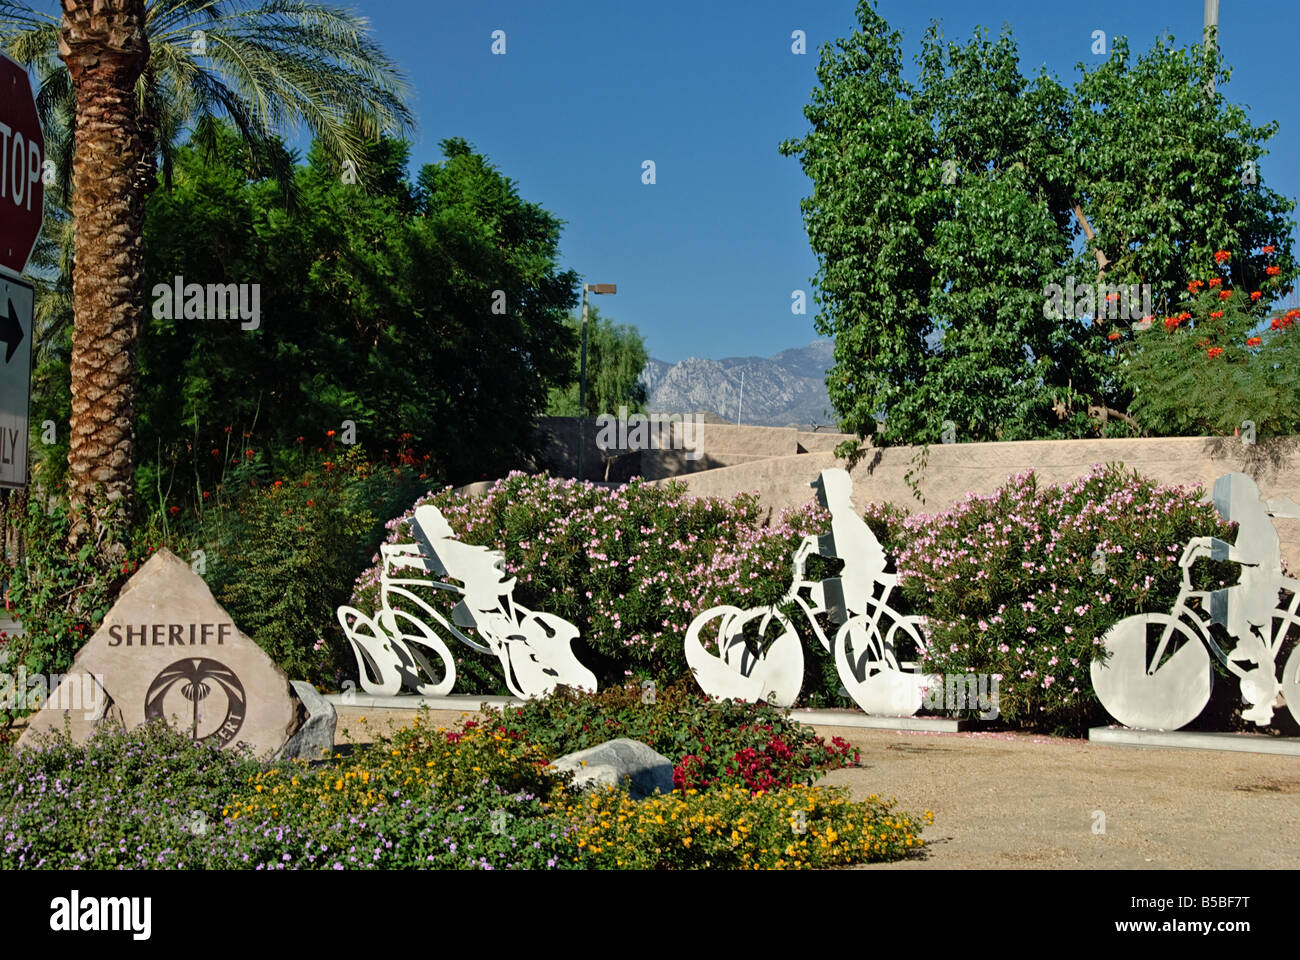 Palm Desert Stadt Riverside County Kalifornien Coachella Valley Sheriff Station Kunst Skulpturen Kinder auf Fahrrädern Stockfoto